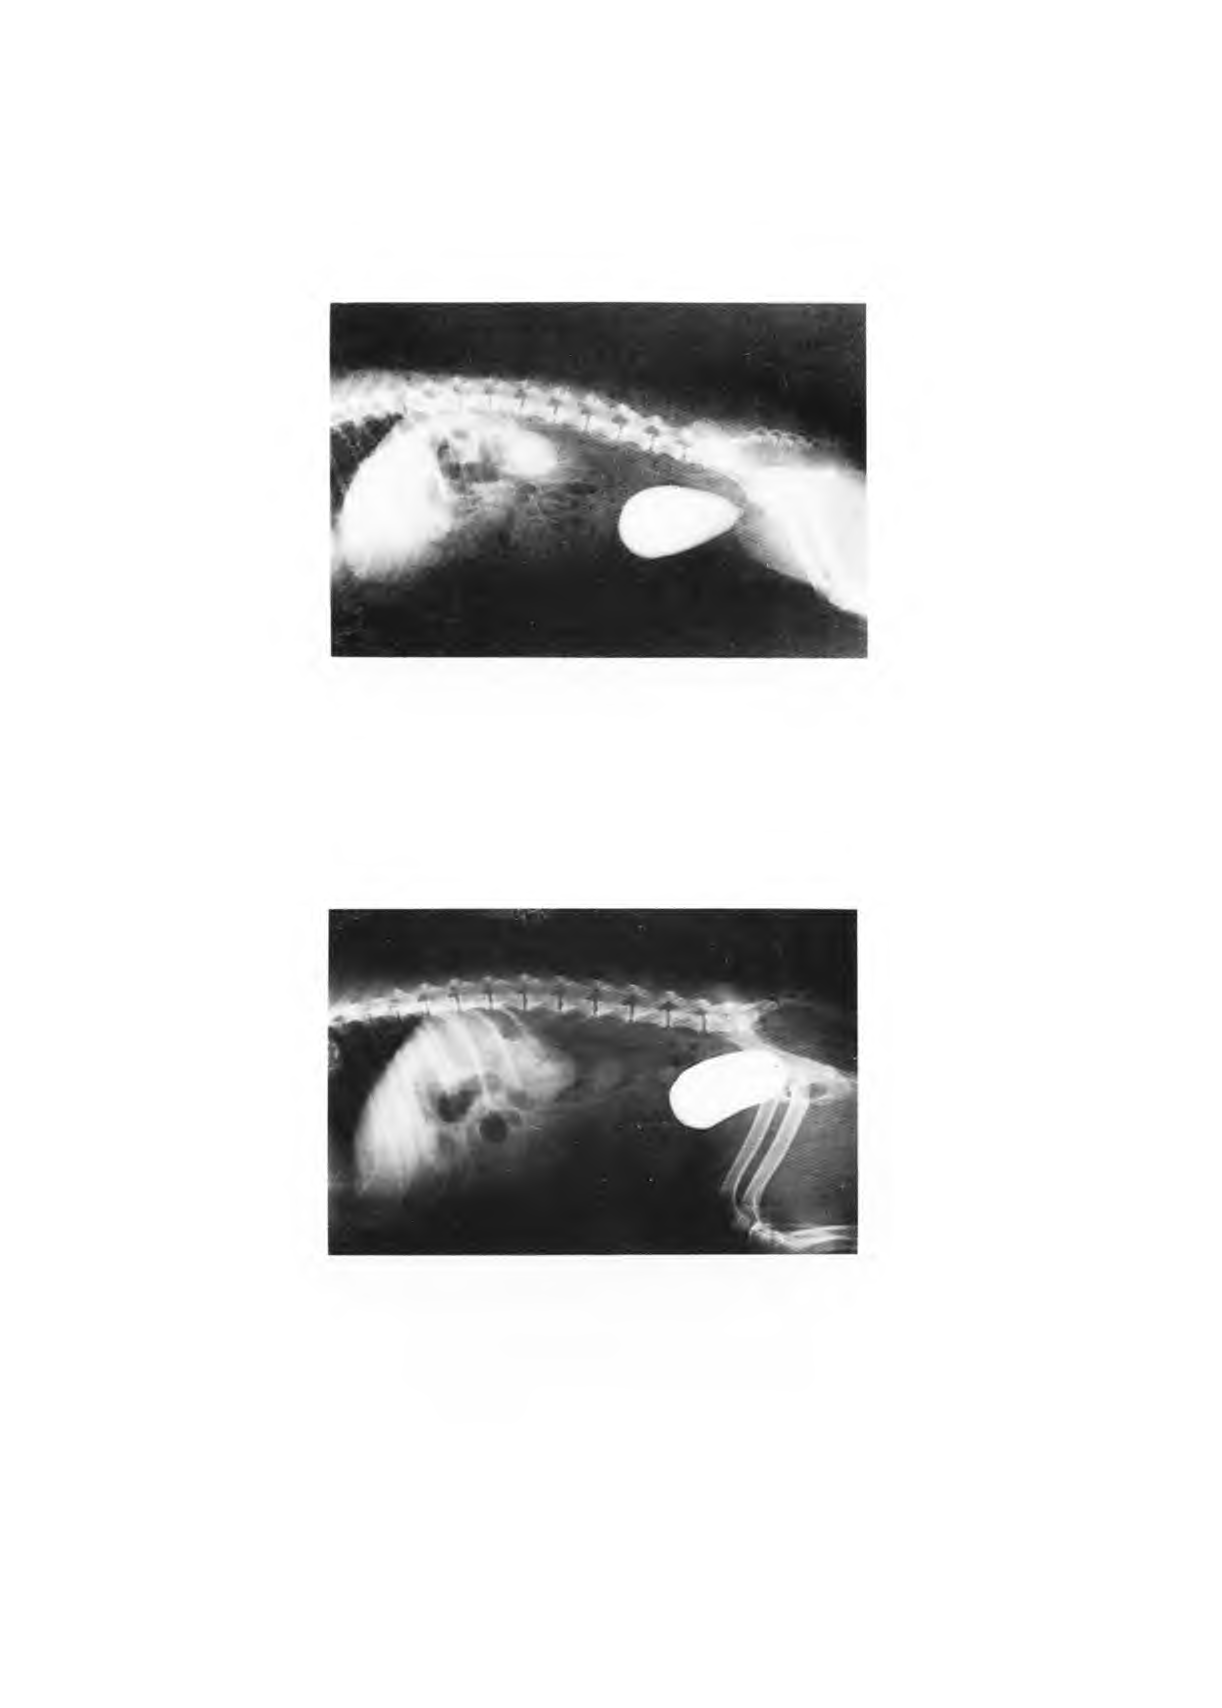 FIGURA 1 - Cistografia mostrando bexiga piriforme, superfície mucosa de contorno